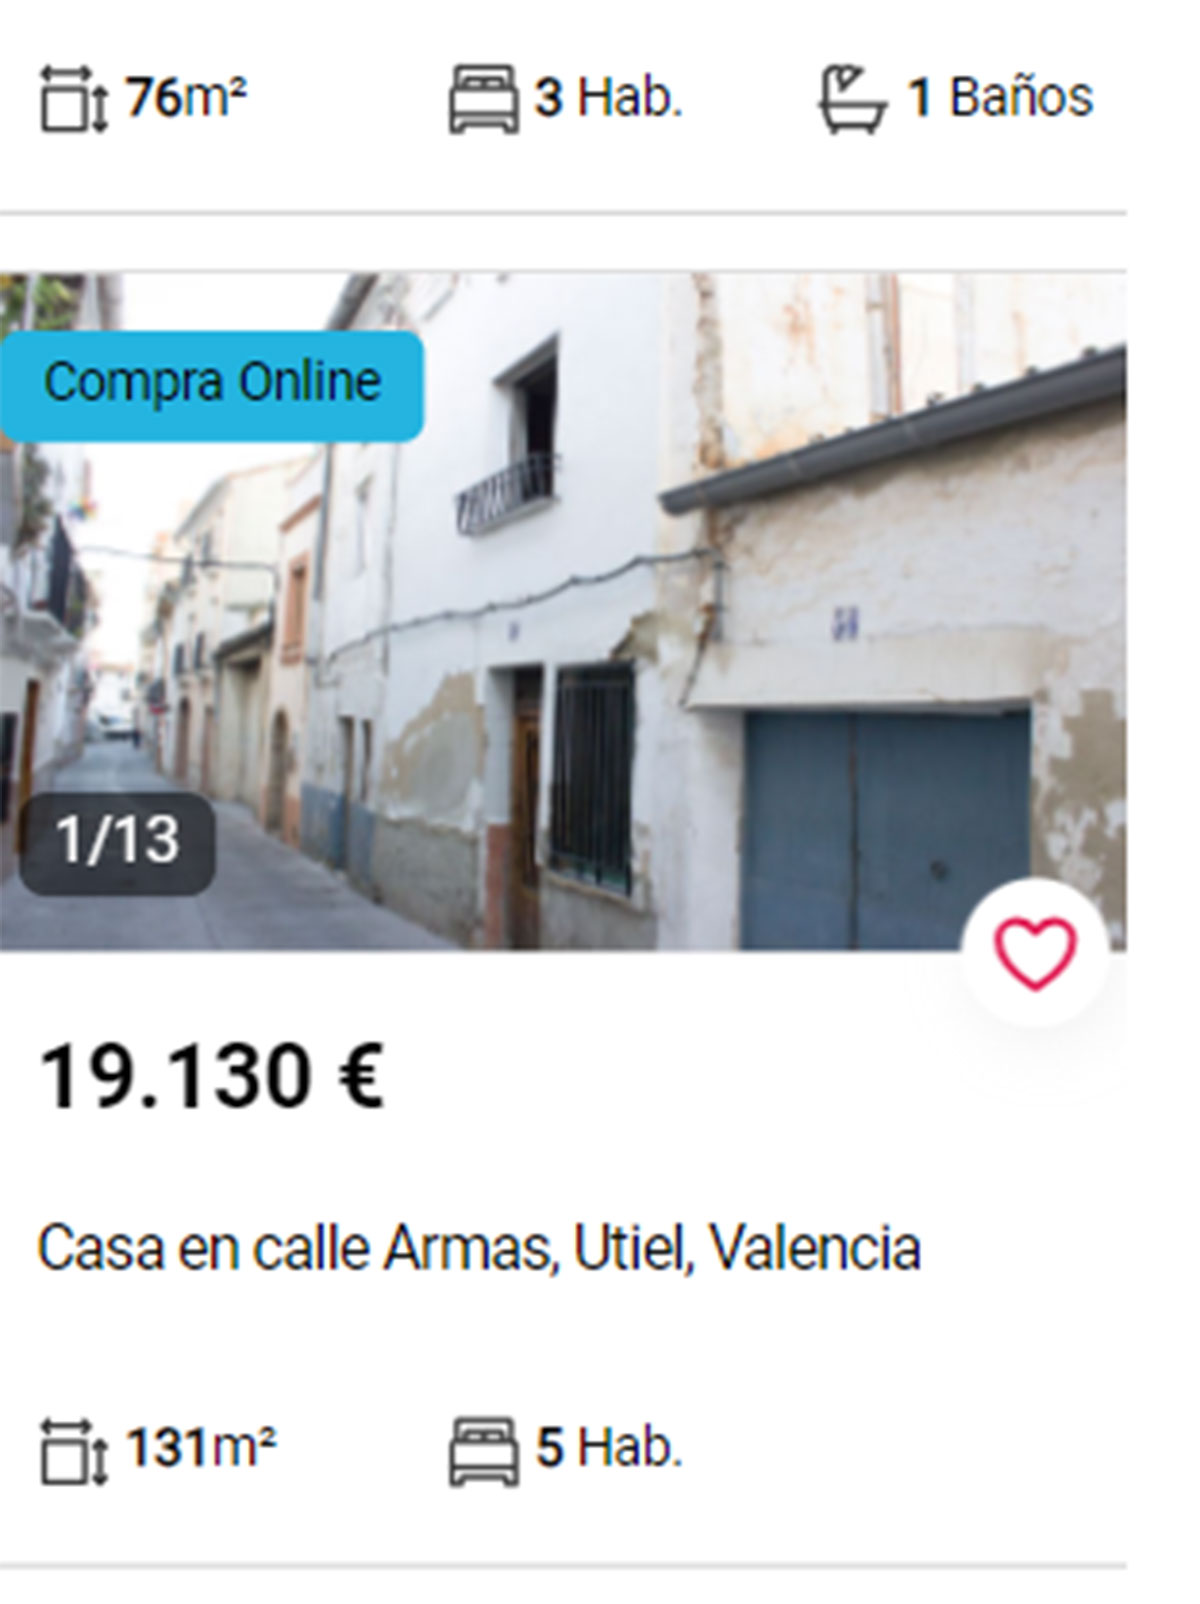 Piso en Valencia por 19.000 euros